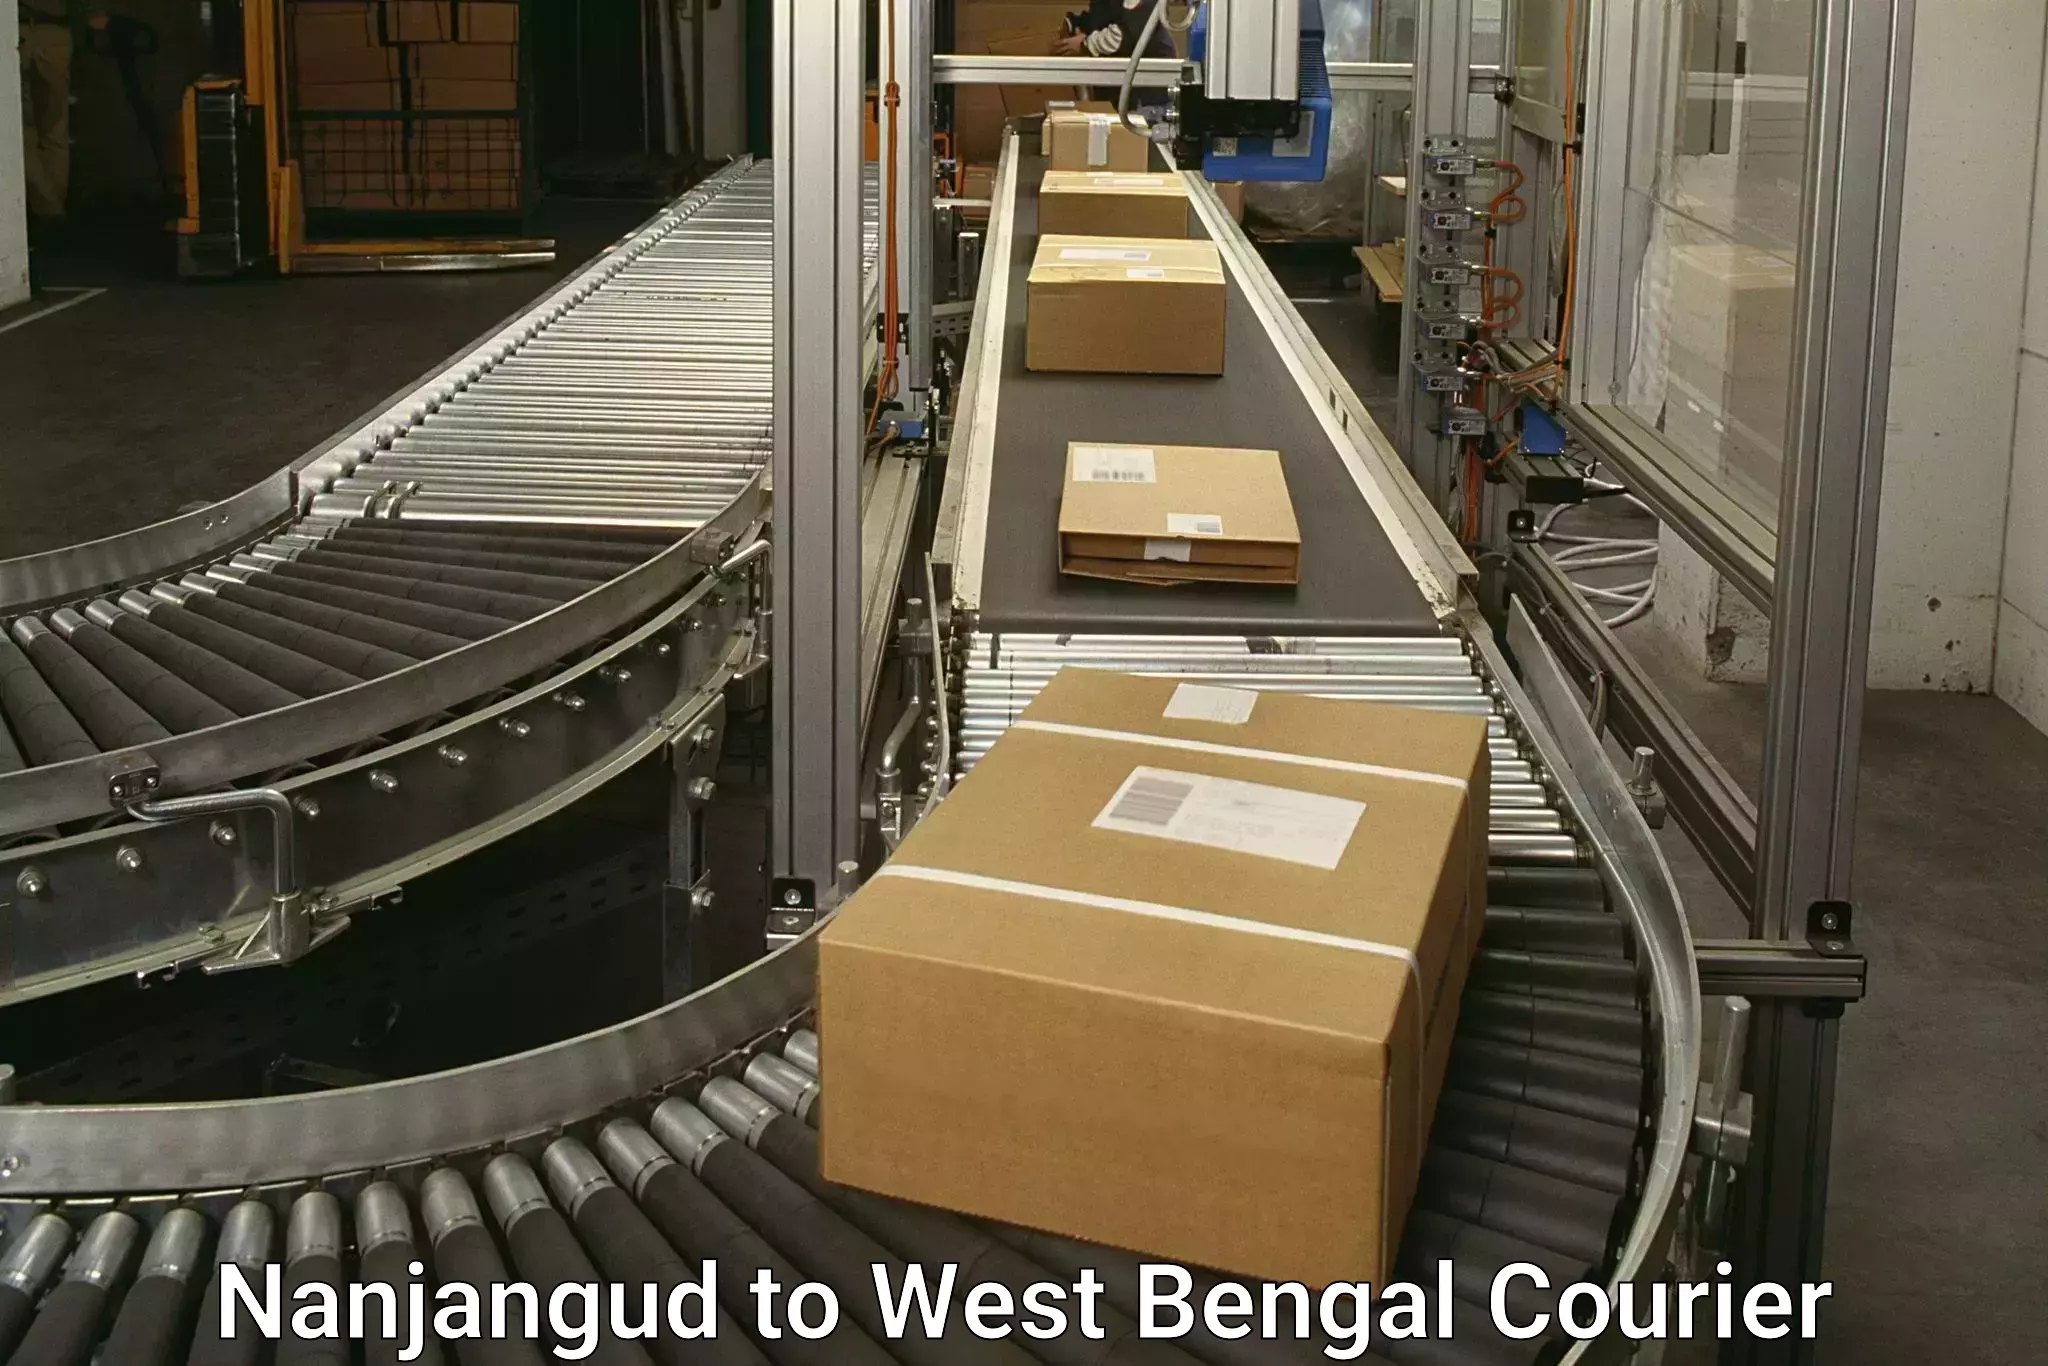 High-capacity shipping options Nanjangud to South 24 Parganas